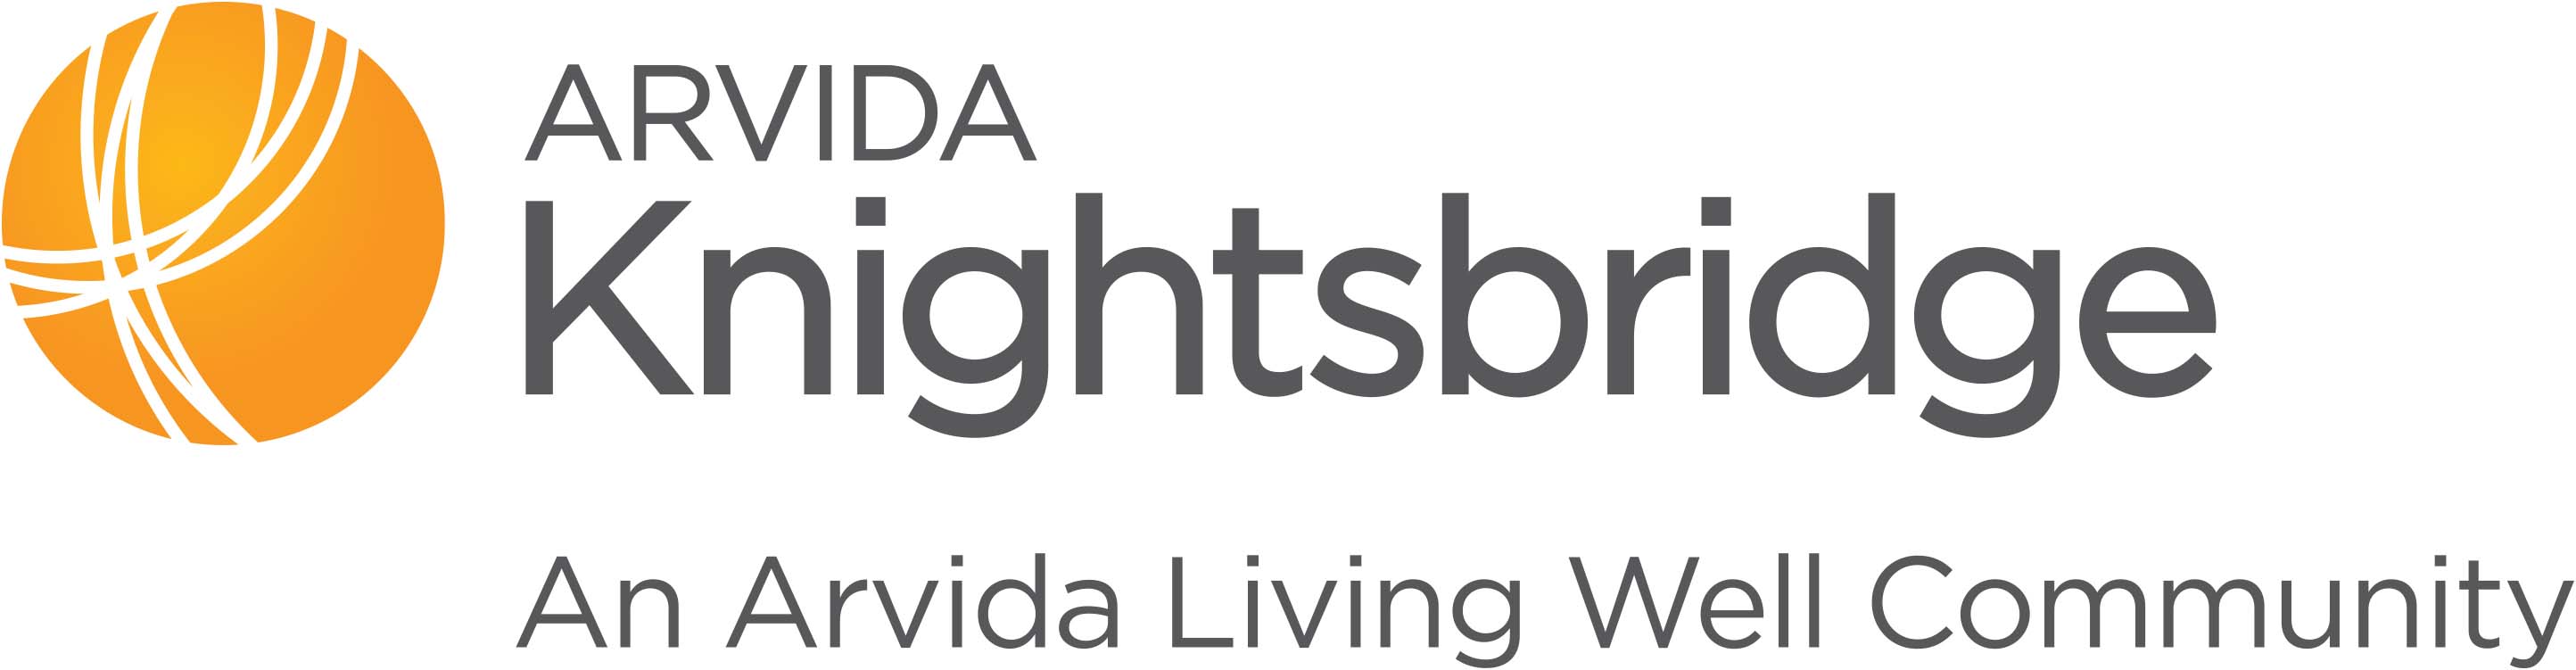 Knightsbridge | Arvida logo